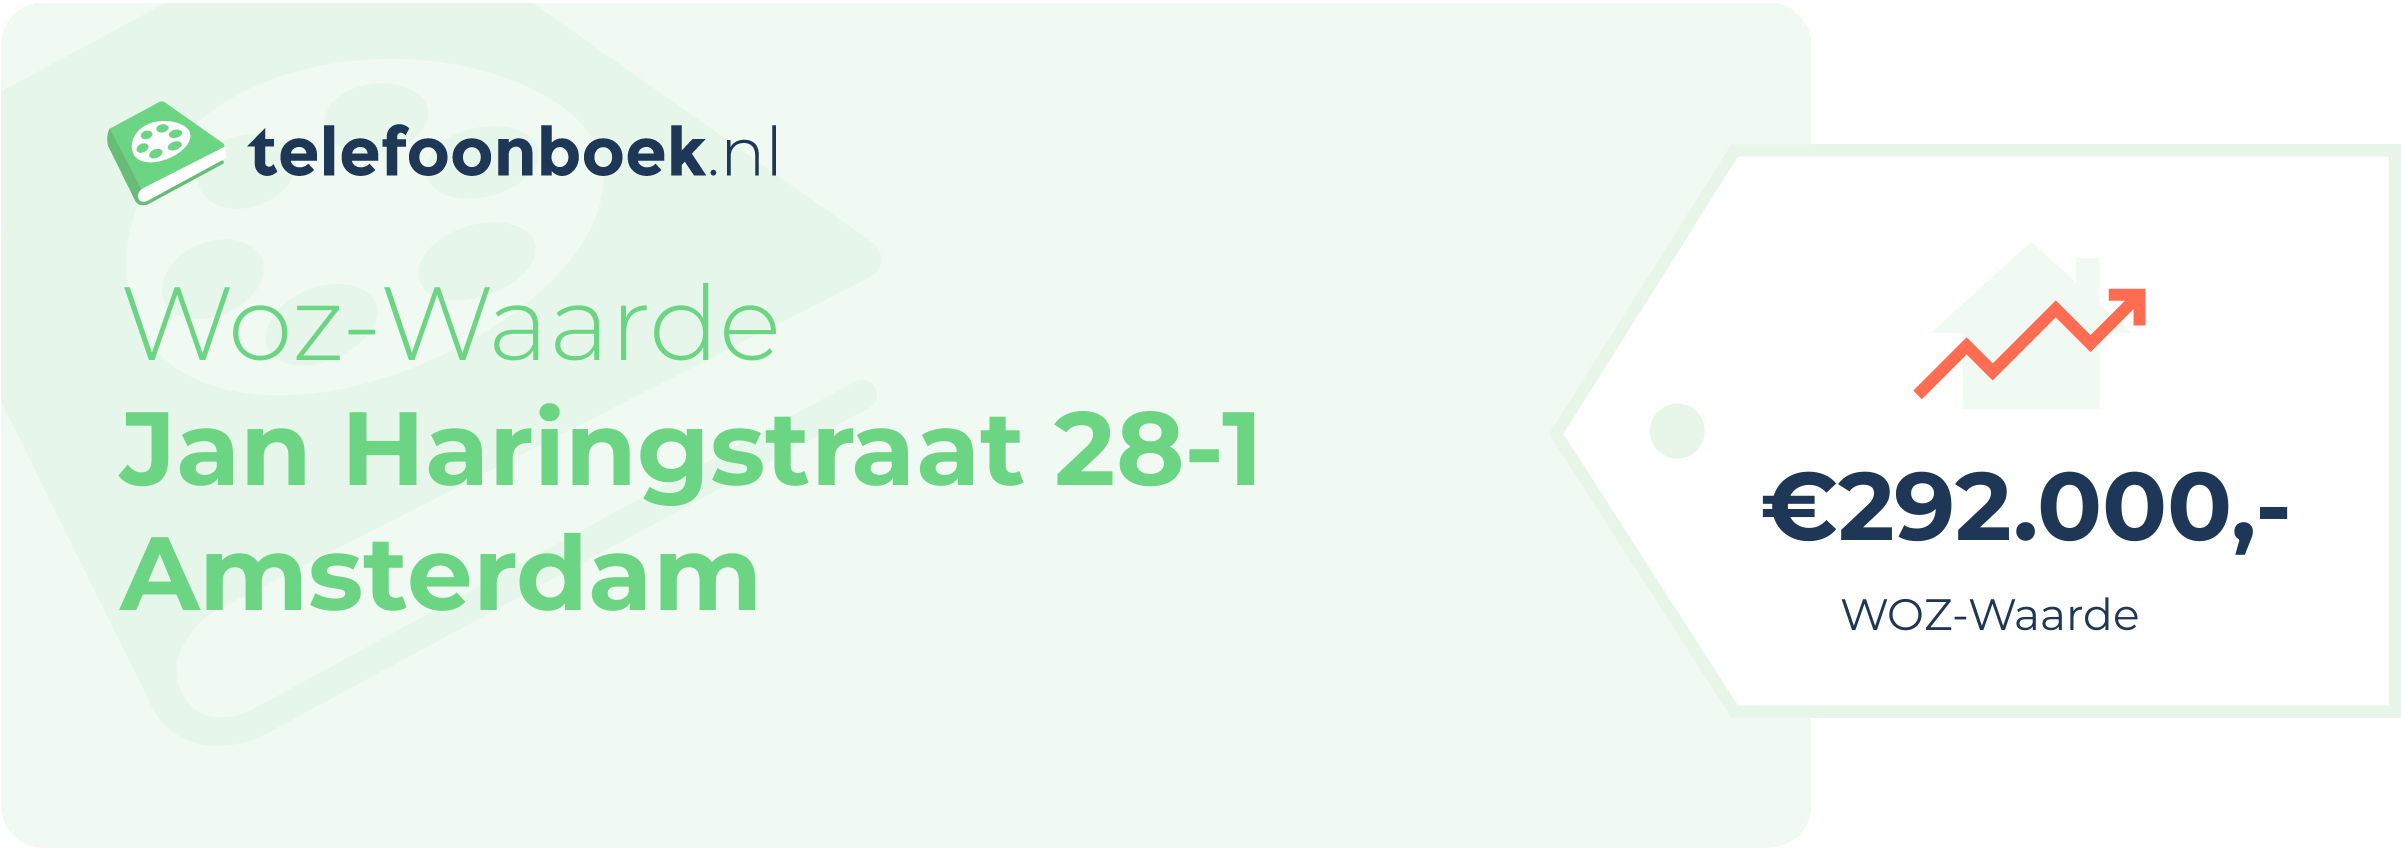 WOZ-waarde Jan Haringstraat 28-1 Amsterdam